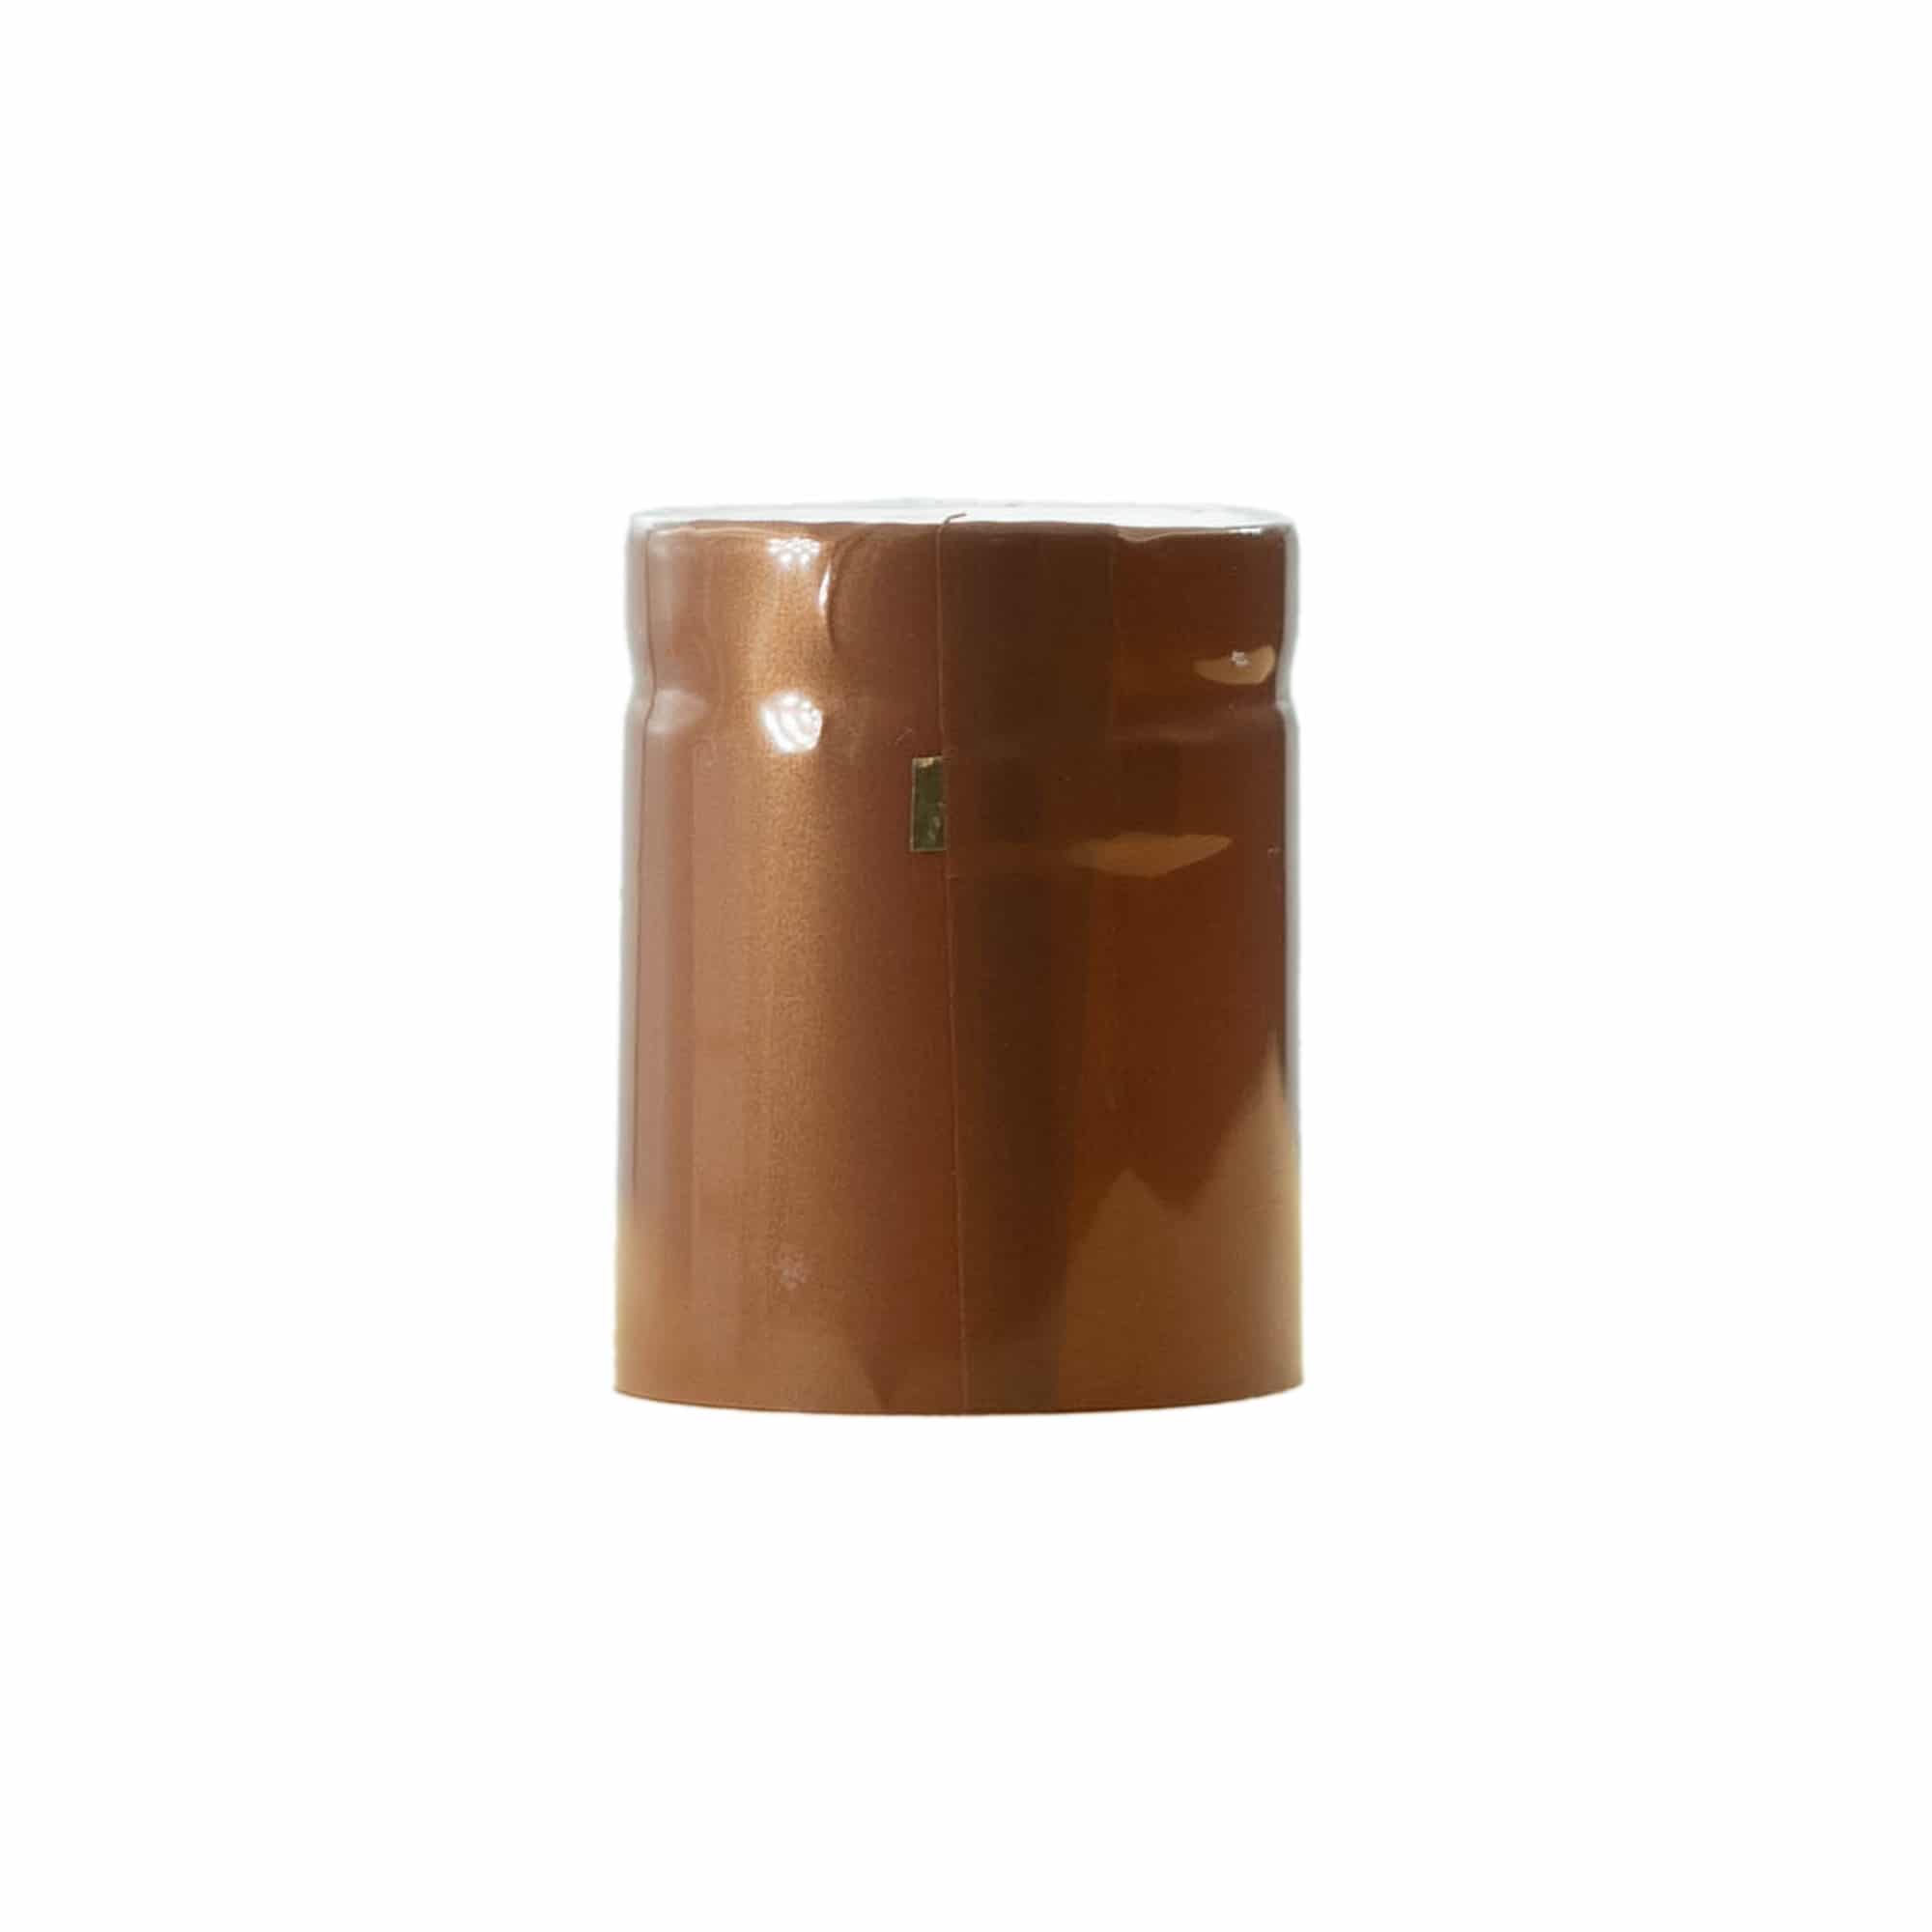 Capsule thermo-rétractable 32x41, plastique PVC, bronze